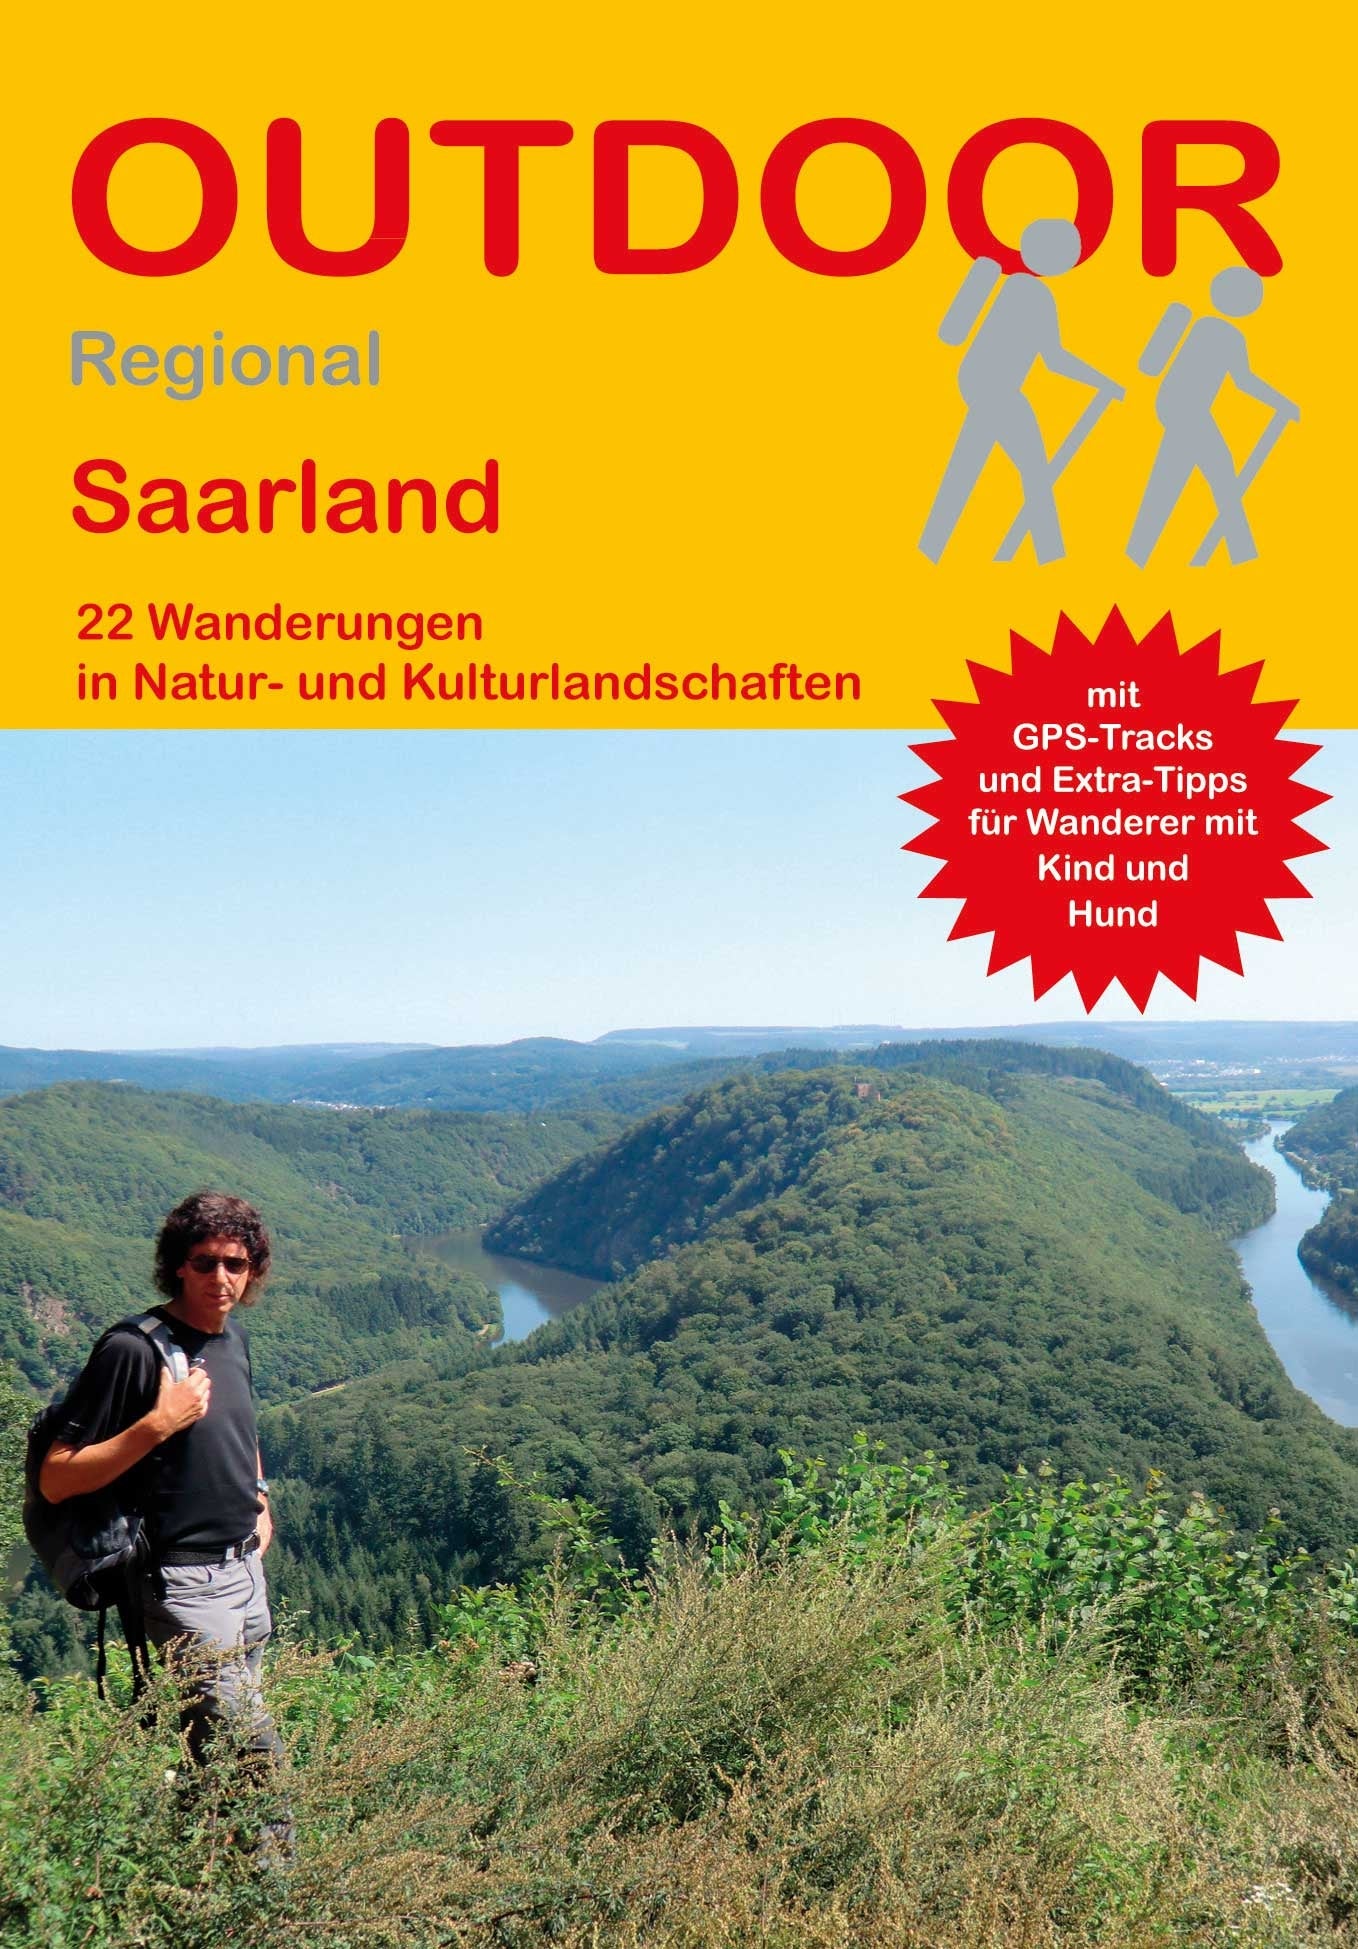 Saarland - 22 Wanderungen in Natur- und Kulturlandschaften  (409)